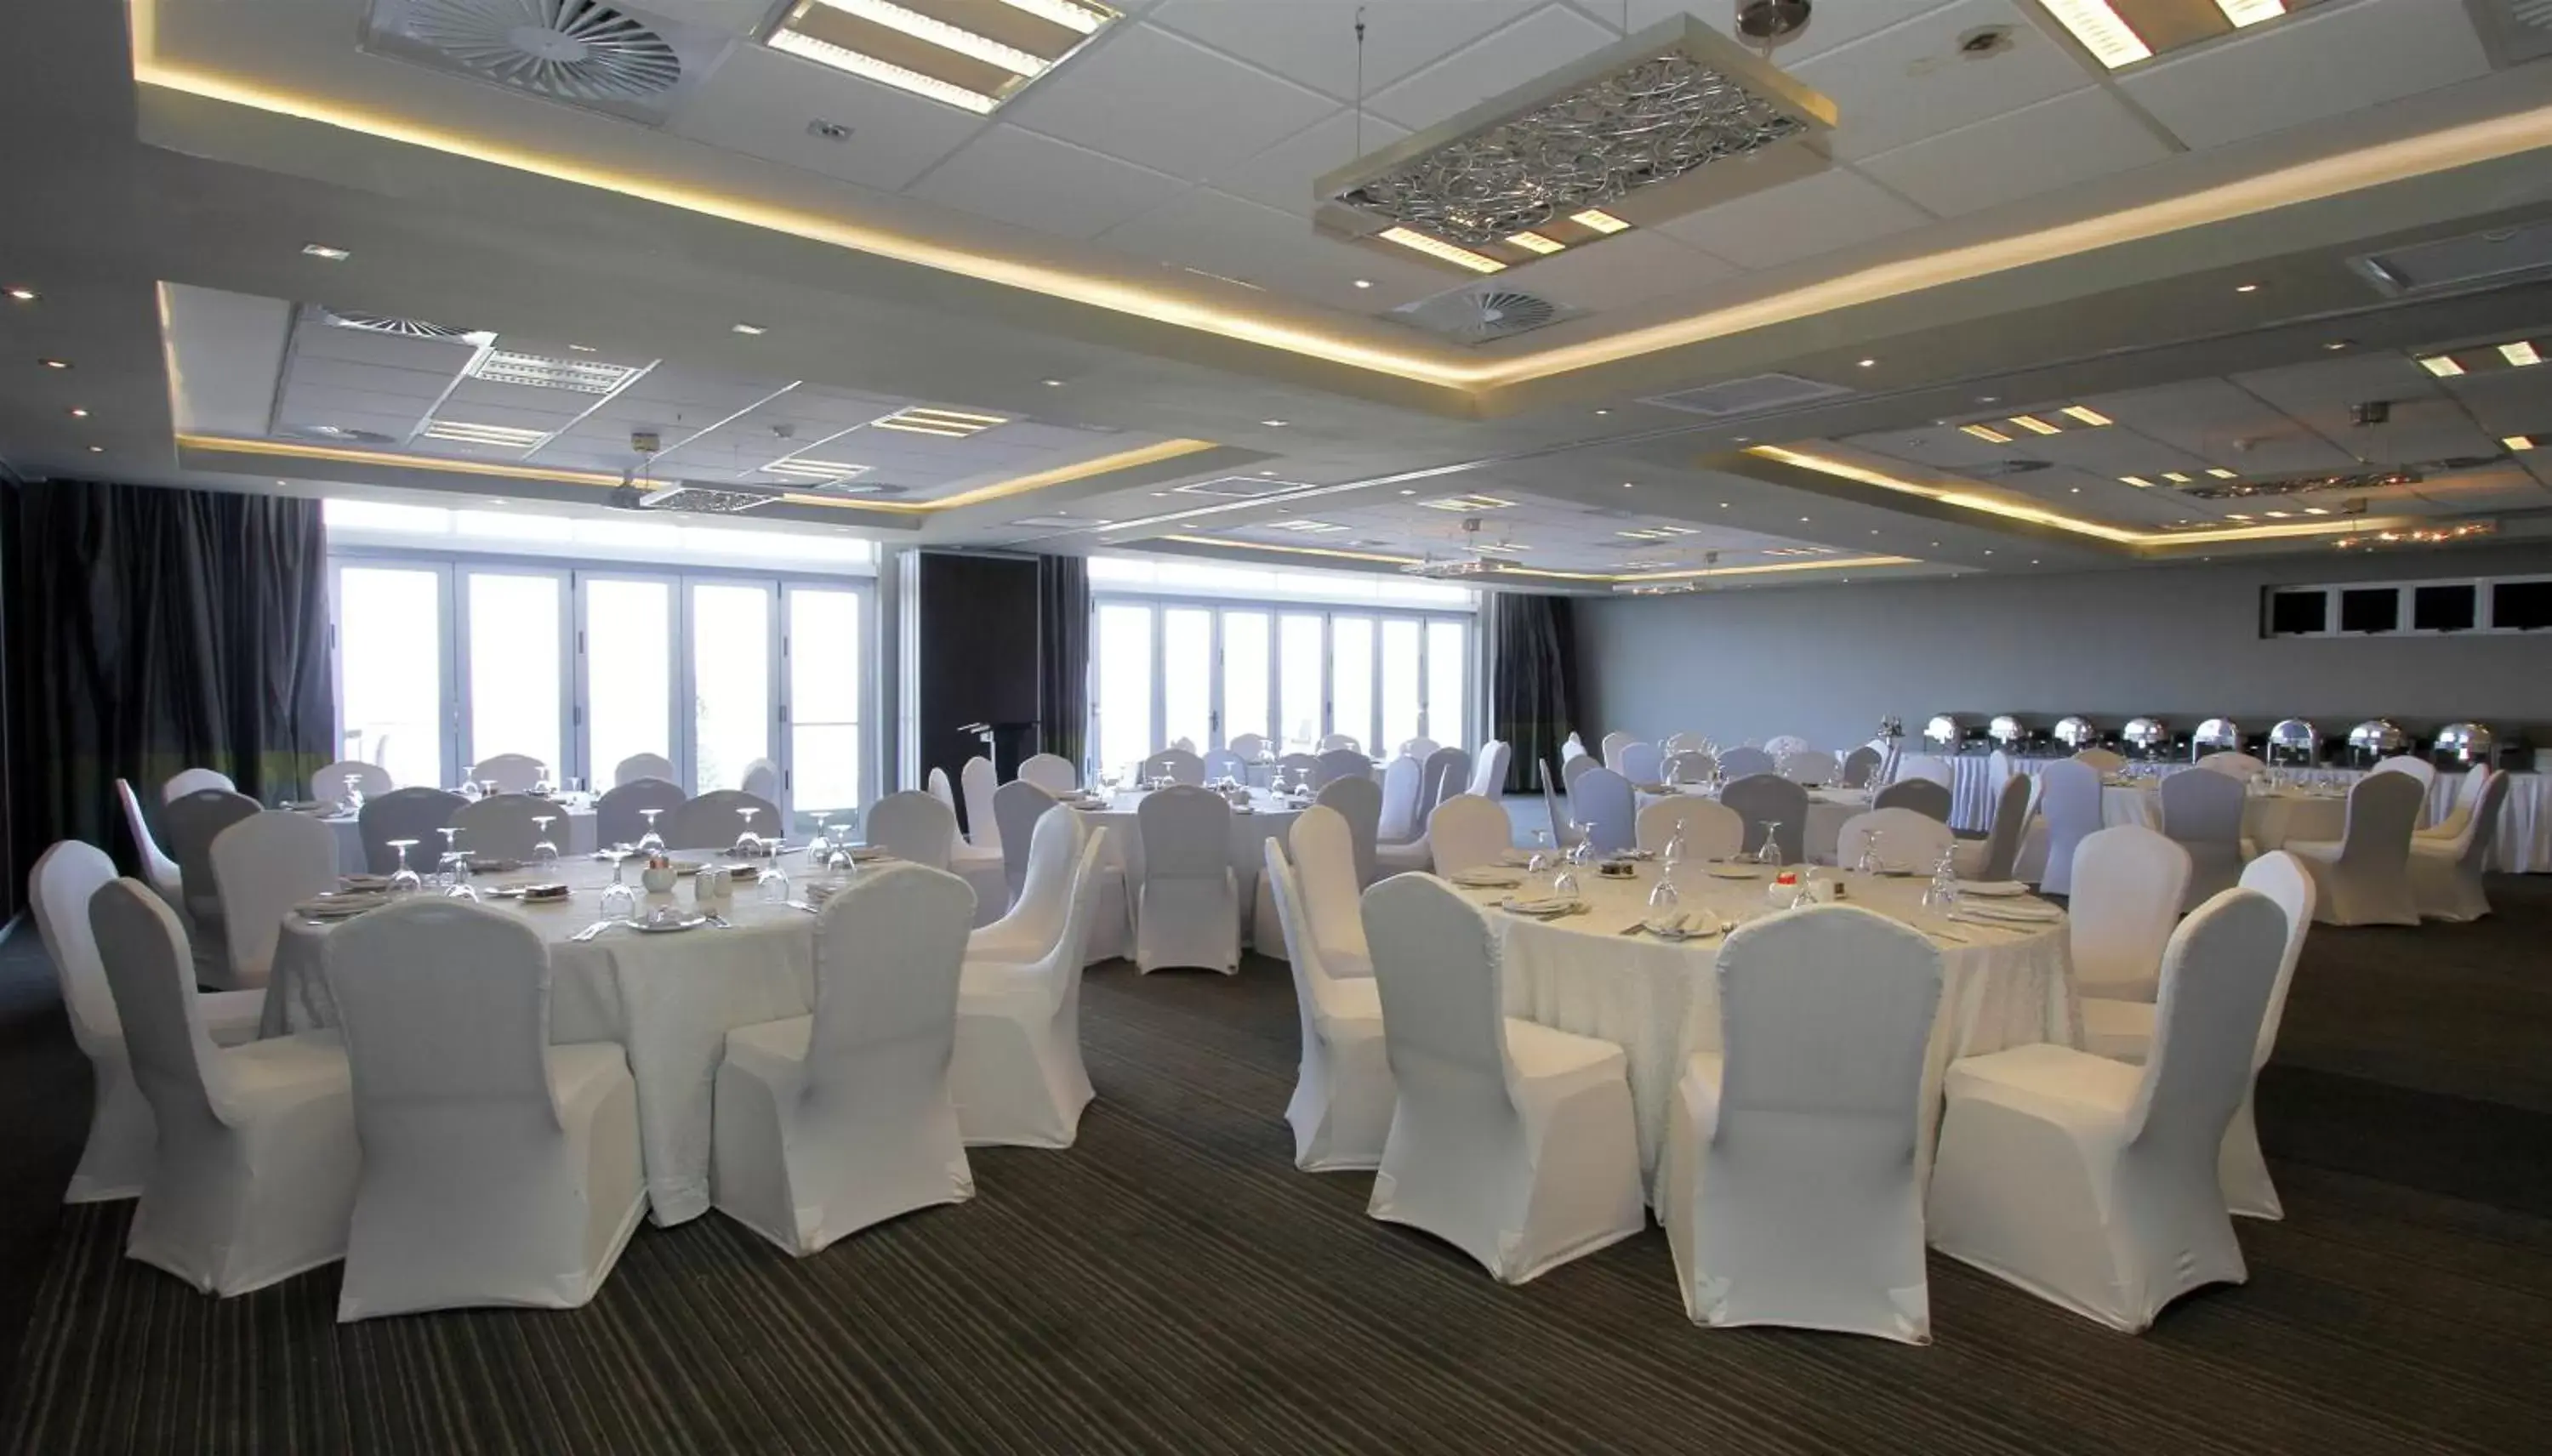 Banquet/Function facilities, Banquet Facilities in Coastlands Musgrave Hotel